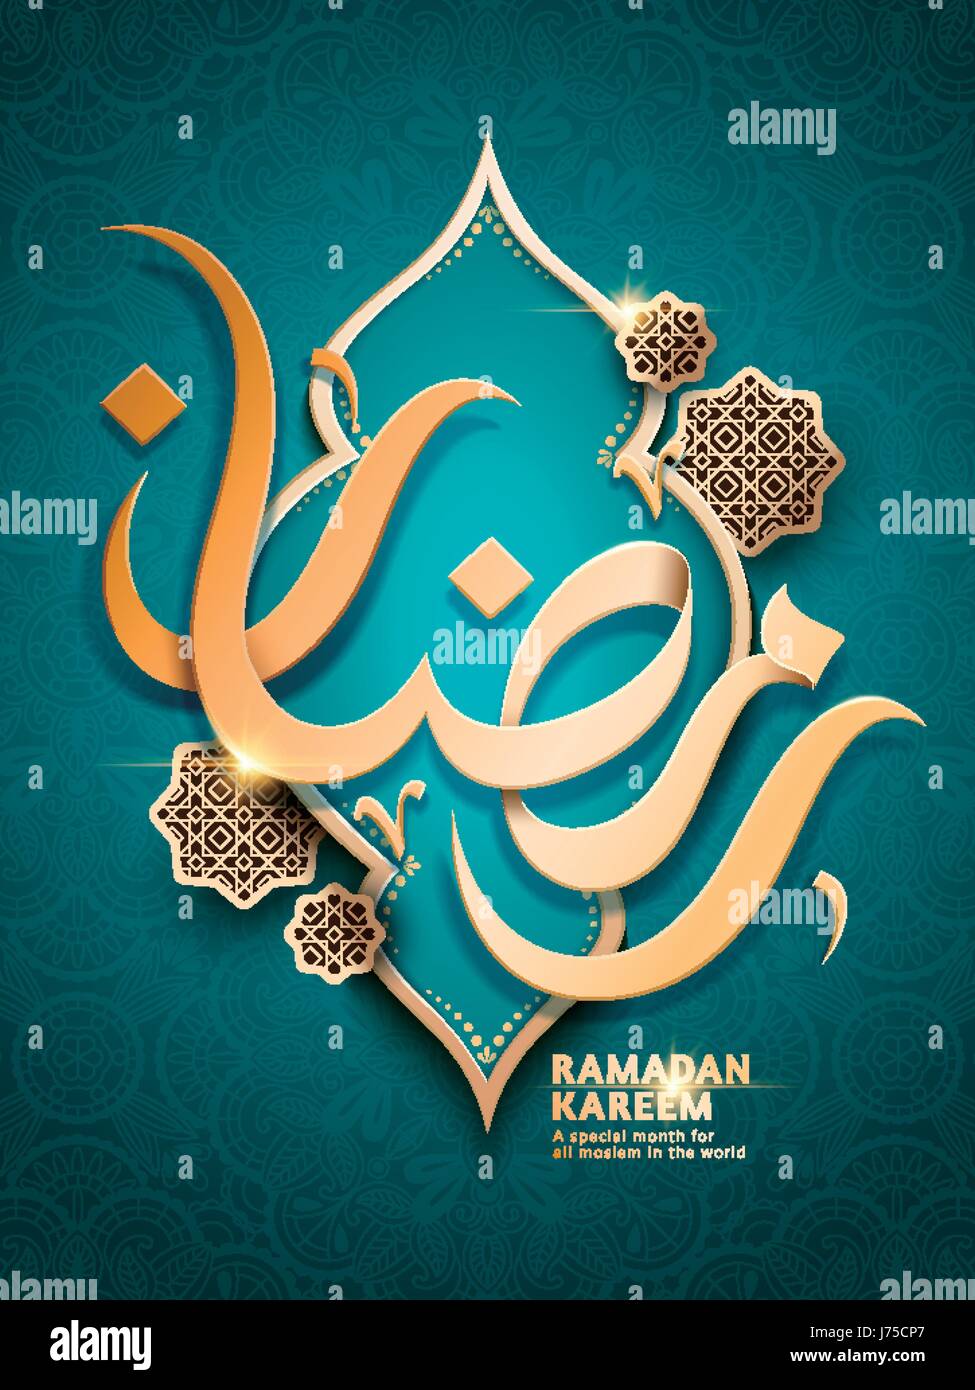 La calligraphie arabe pour la conception d'or Ramadan Kareem sur un cadre, fond bleu turquoise Illustration de Vecteur